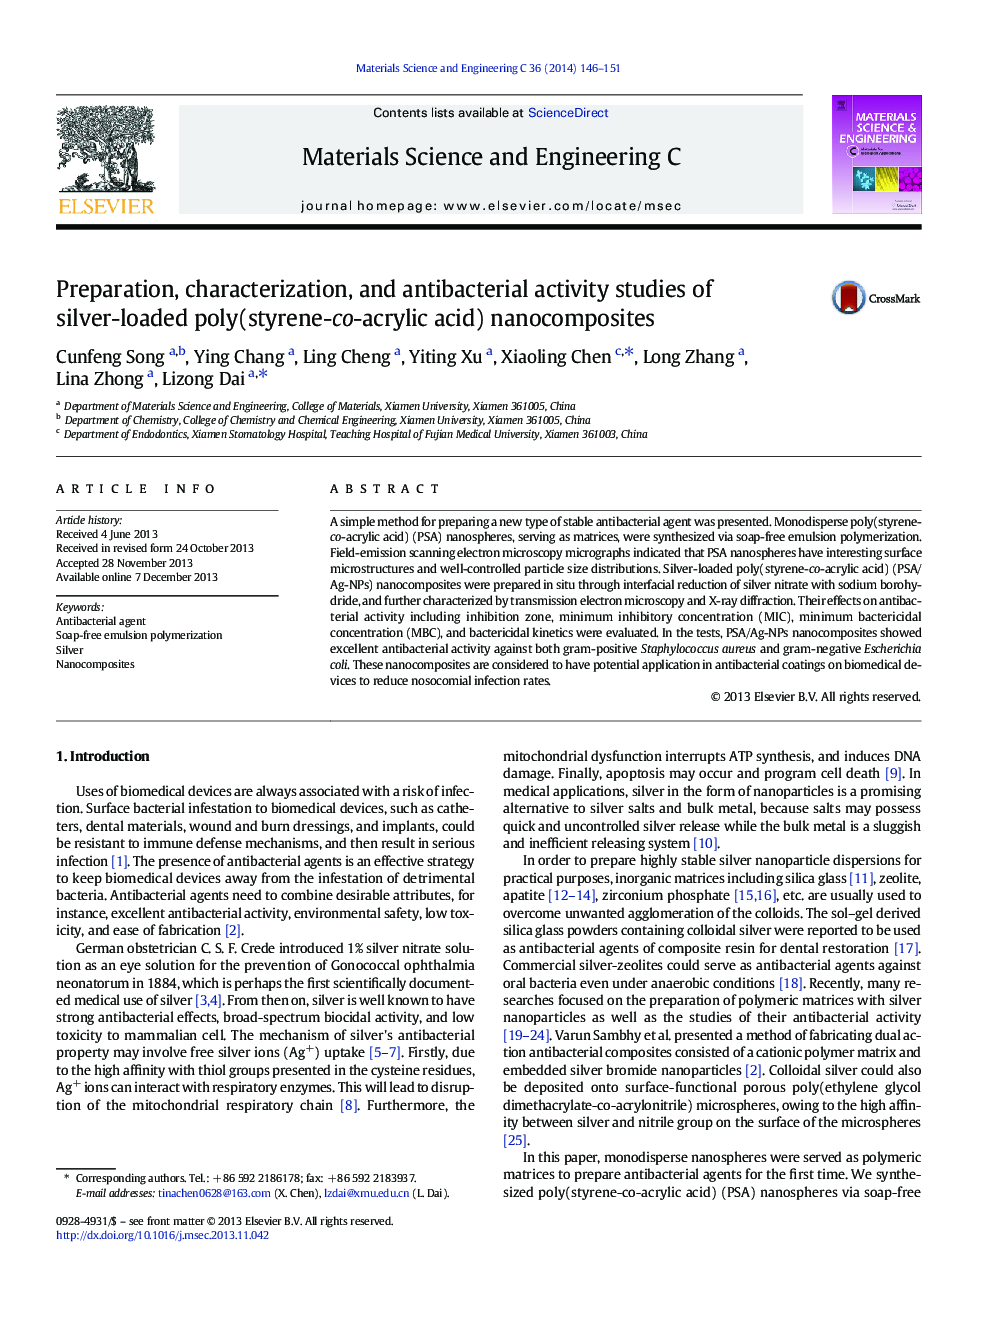 مطالعات آمادگی، خصوصیات و فعالیت های ضد باکتری نانو کامپوزیت های پلی (استایرن اکریلیک اسید) 